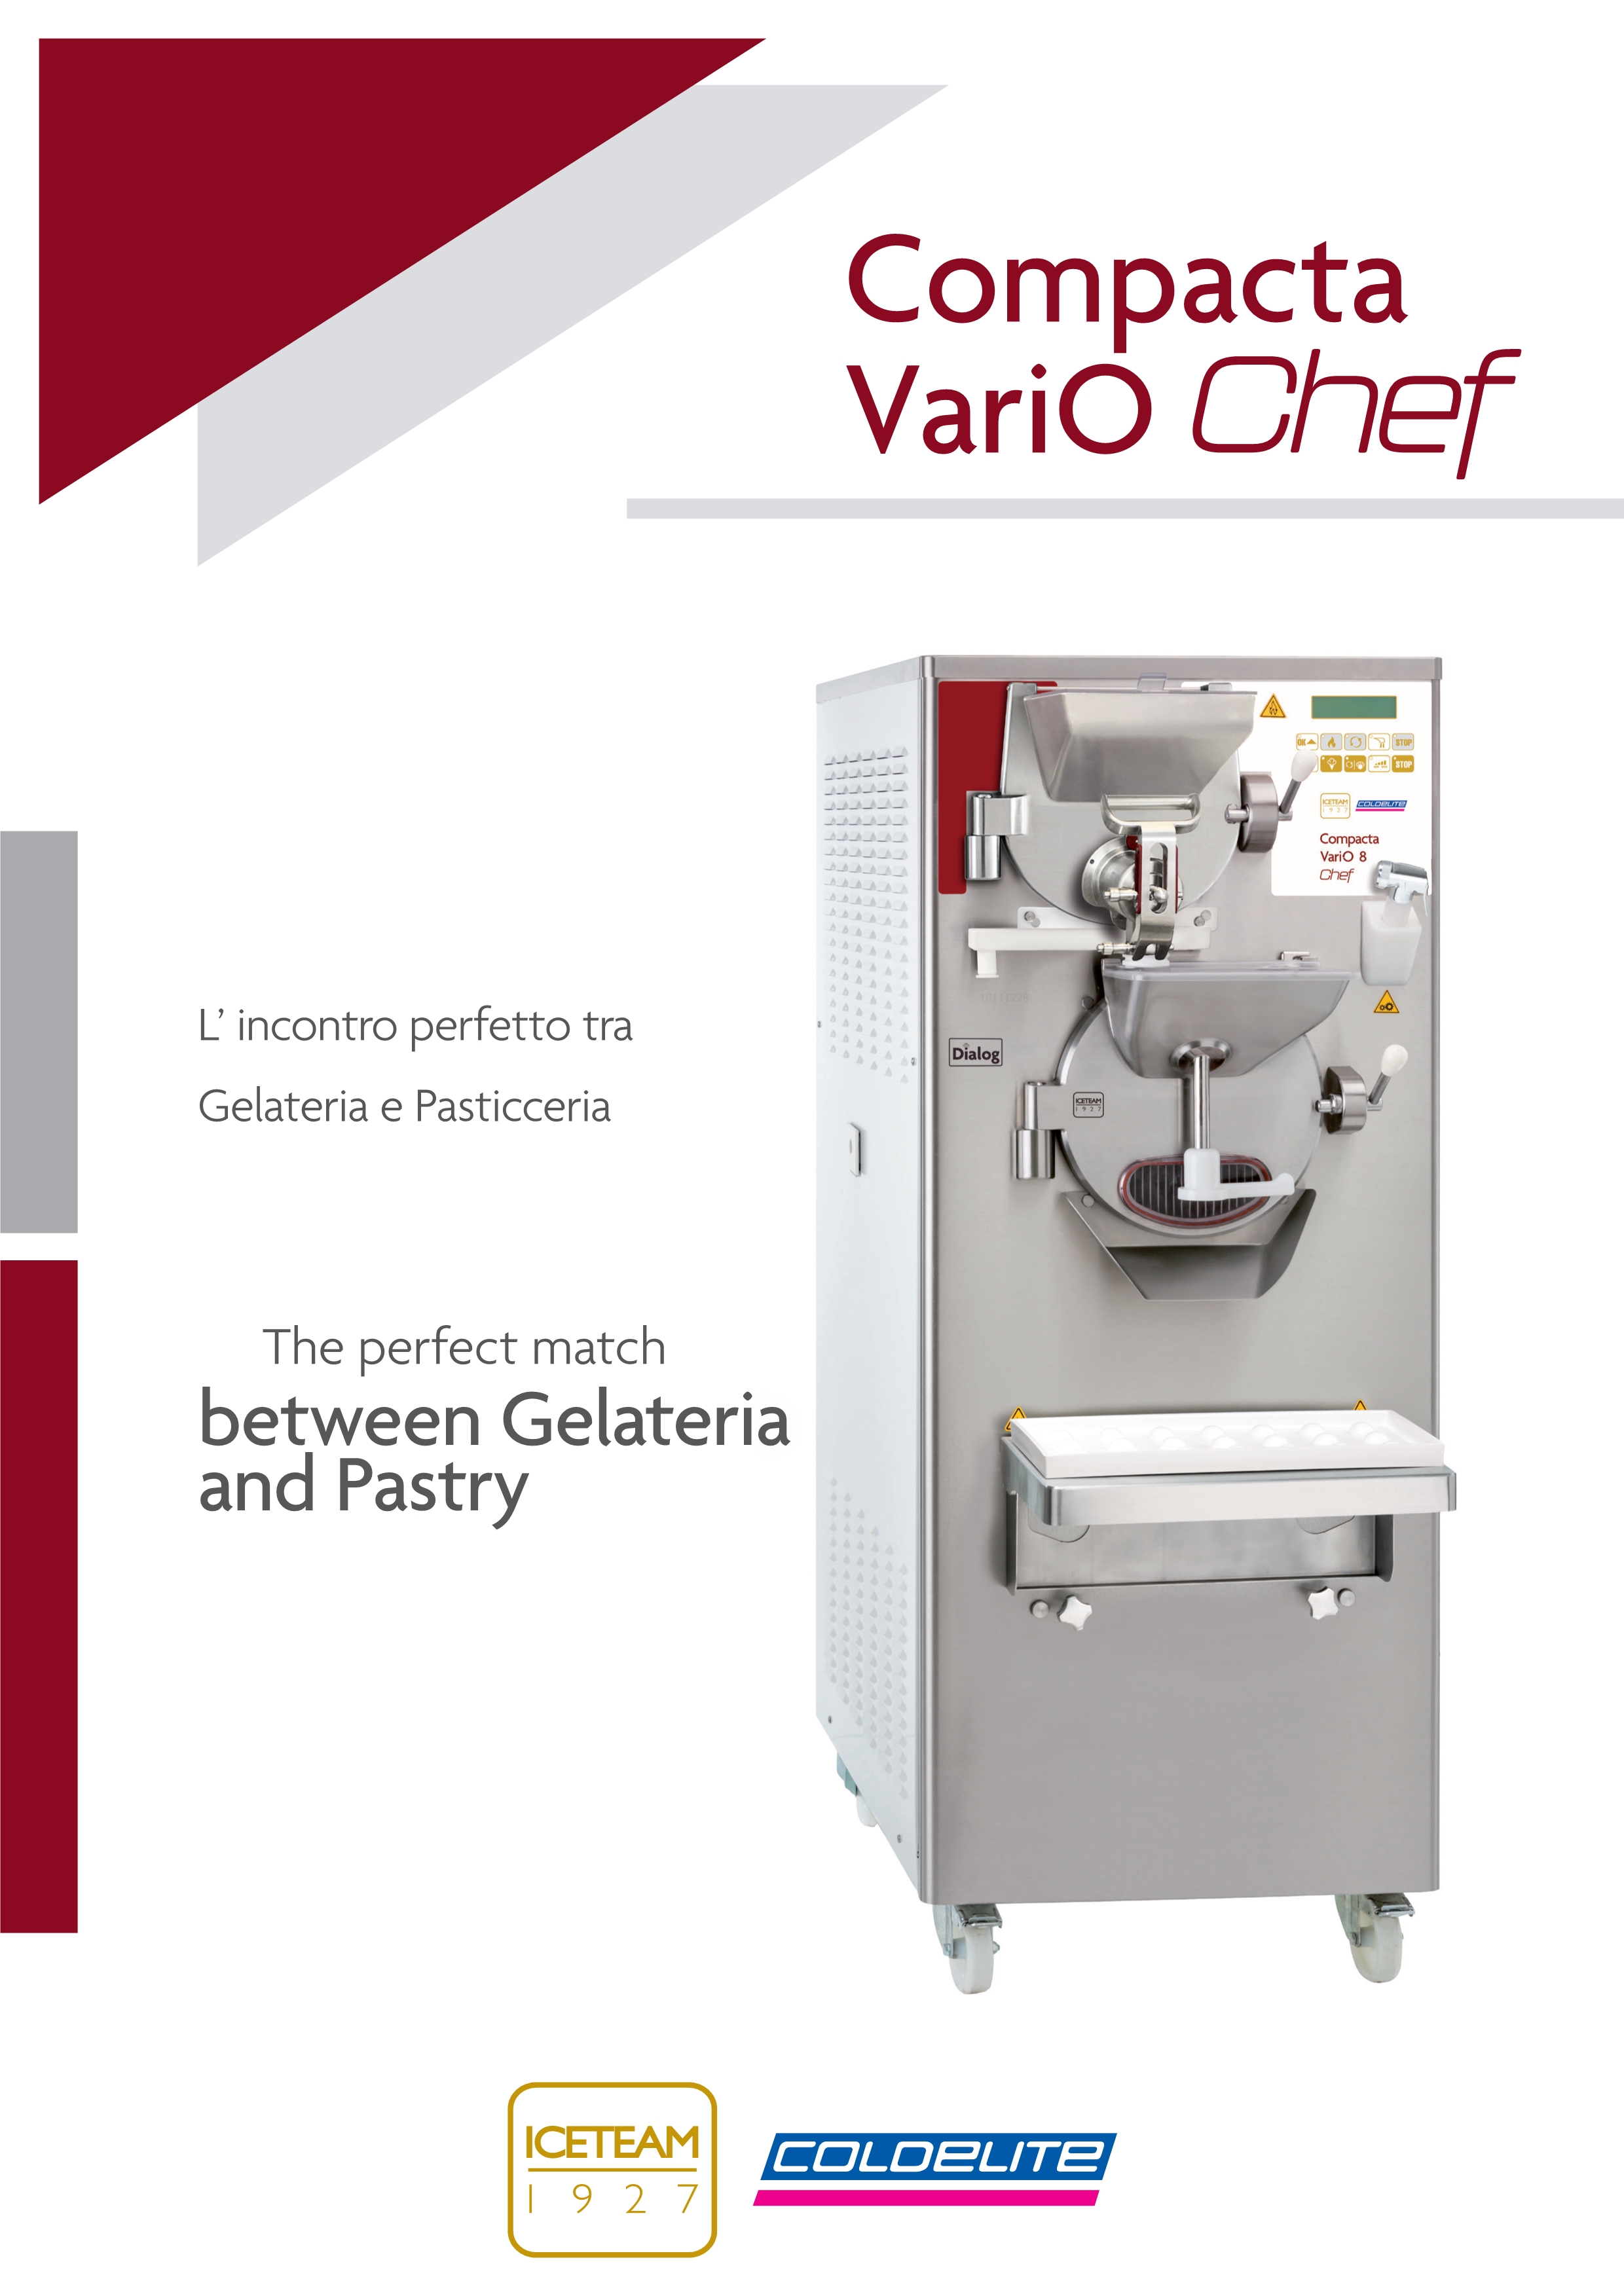 意大利冰淇淋机Compacta Vario Chef